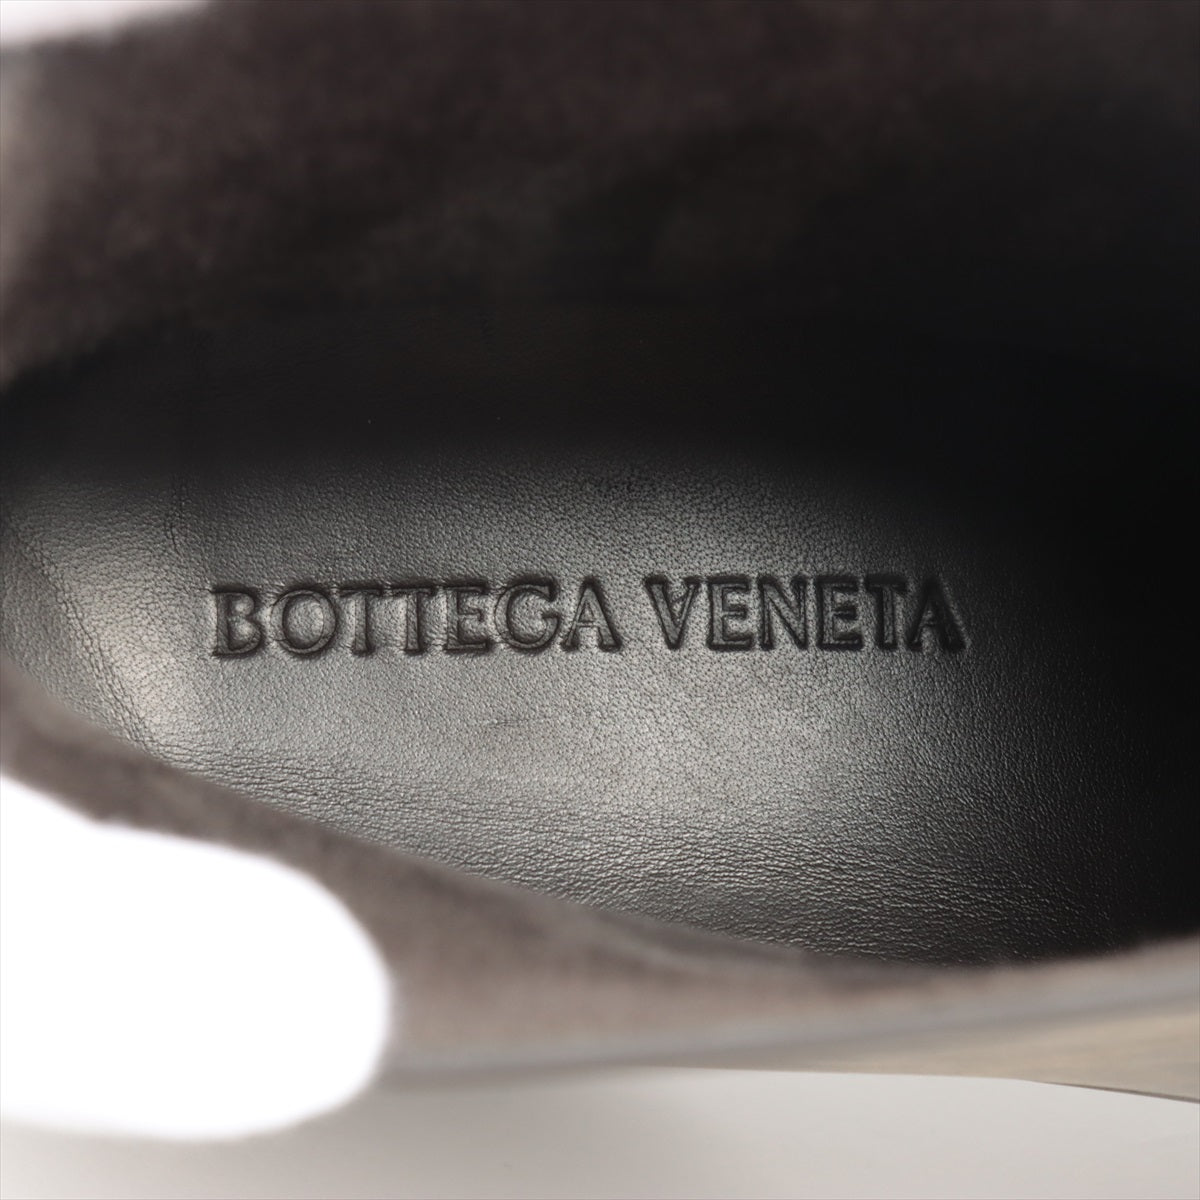 ボッテガヴェネタ ラバー ブーツ 41 メンズ ブラウン パドルブーツ